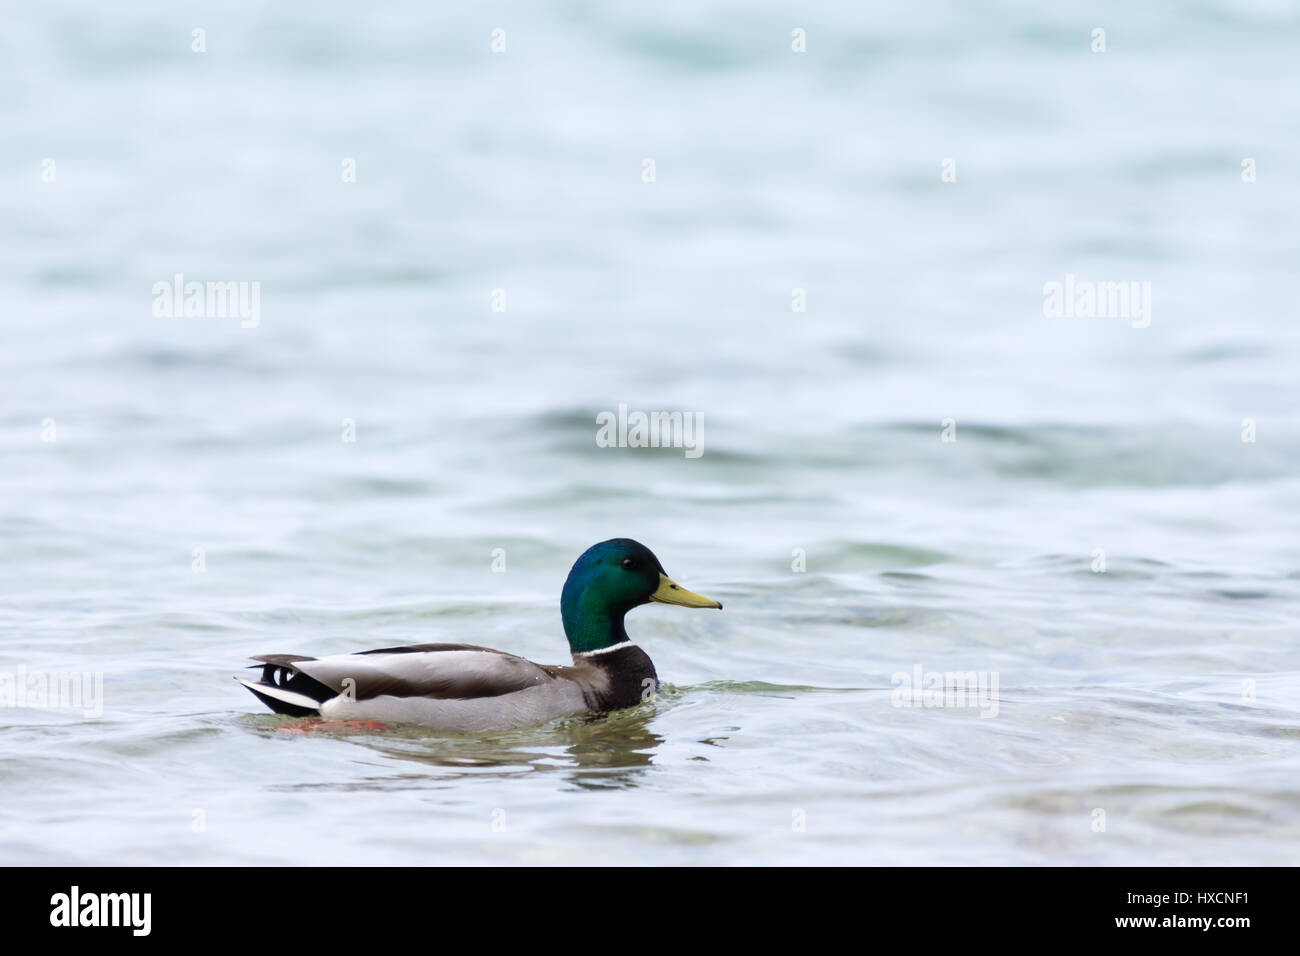 Ein männlicher (Drake) Stockente (Anas platyrhynchos) schwimmen. Stockfoto